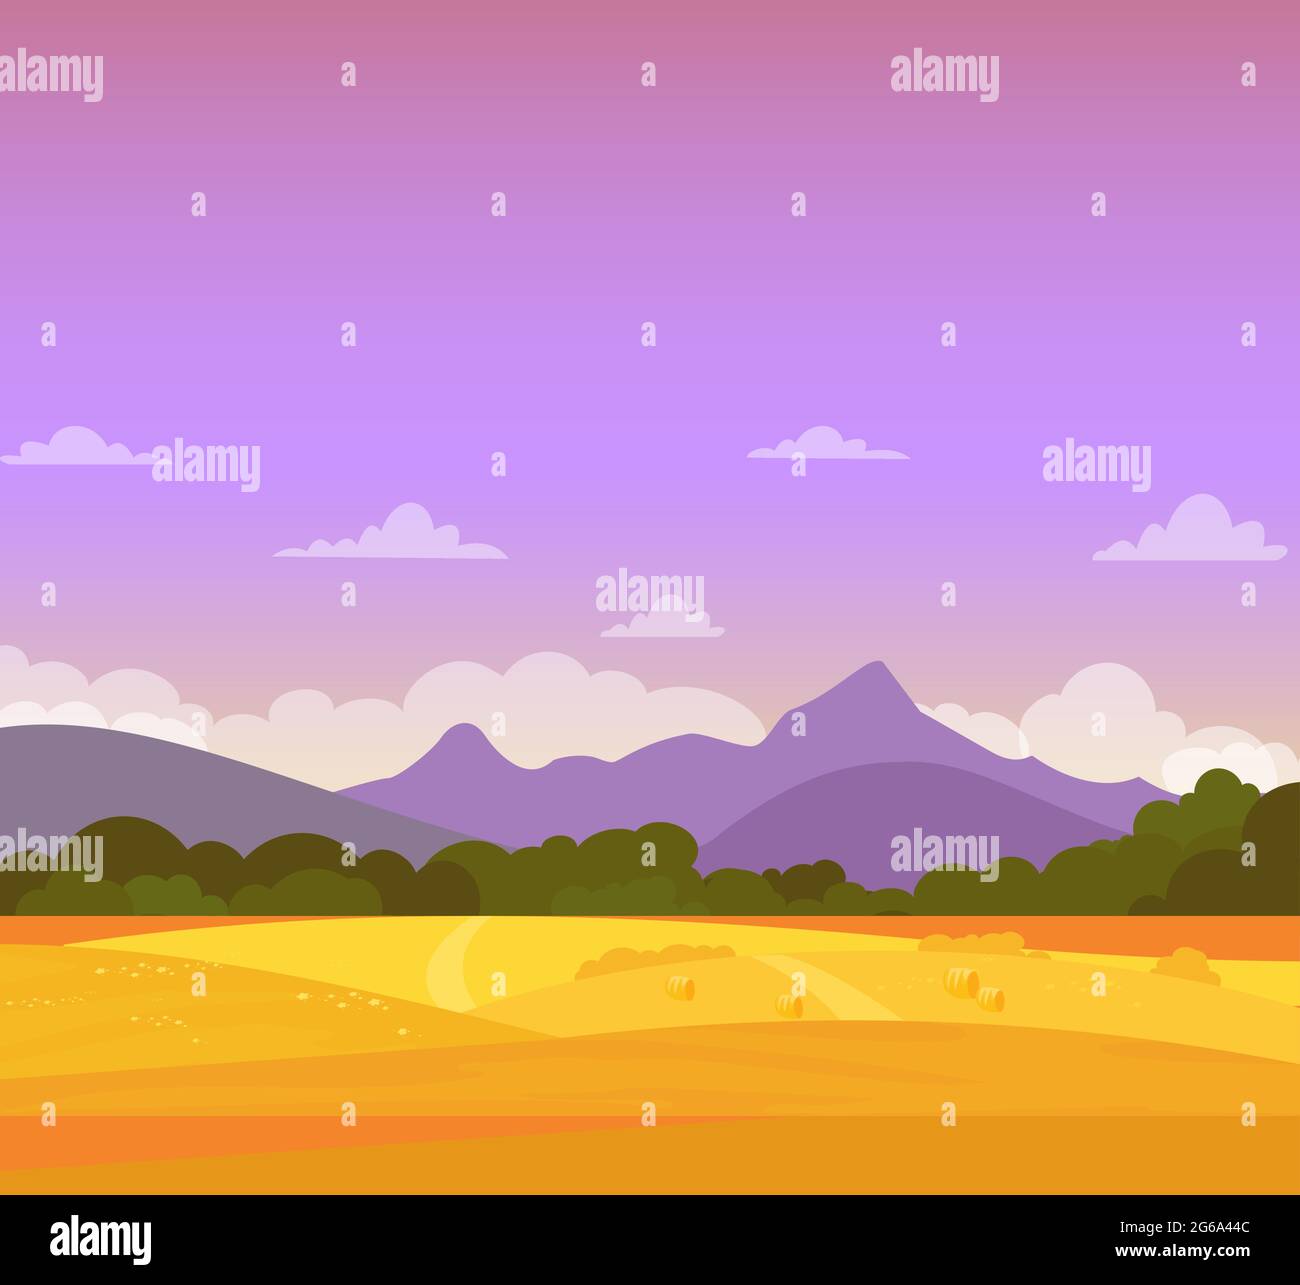 Illustration vectorielle d'un magnifique paysage d'automne coloré avec champs, montagnes et ciel. Concept agricole, style dessin animé plat. Illustration de Vecteur